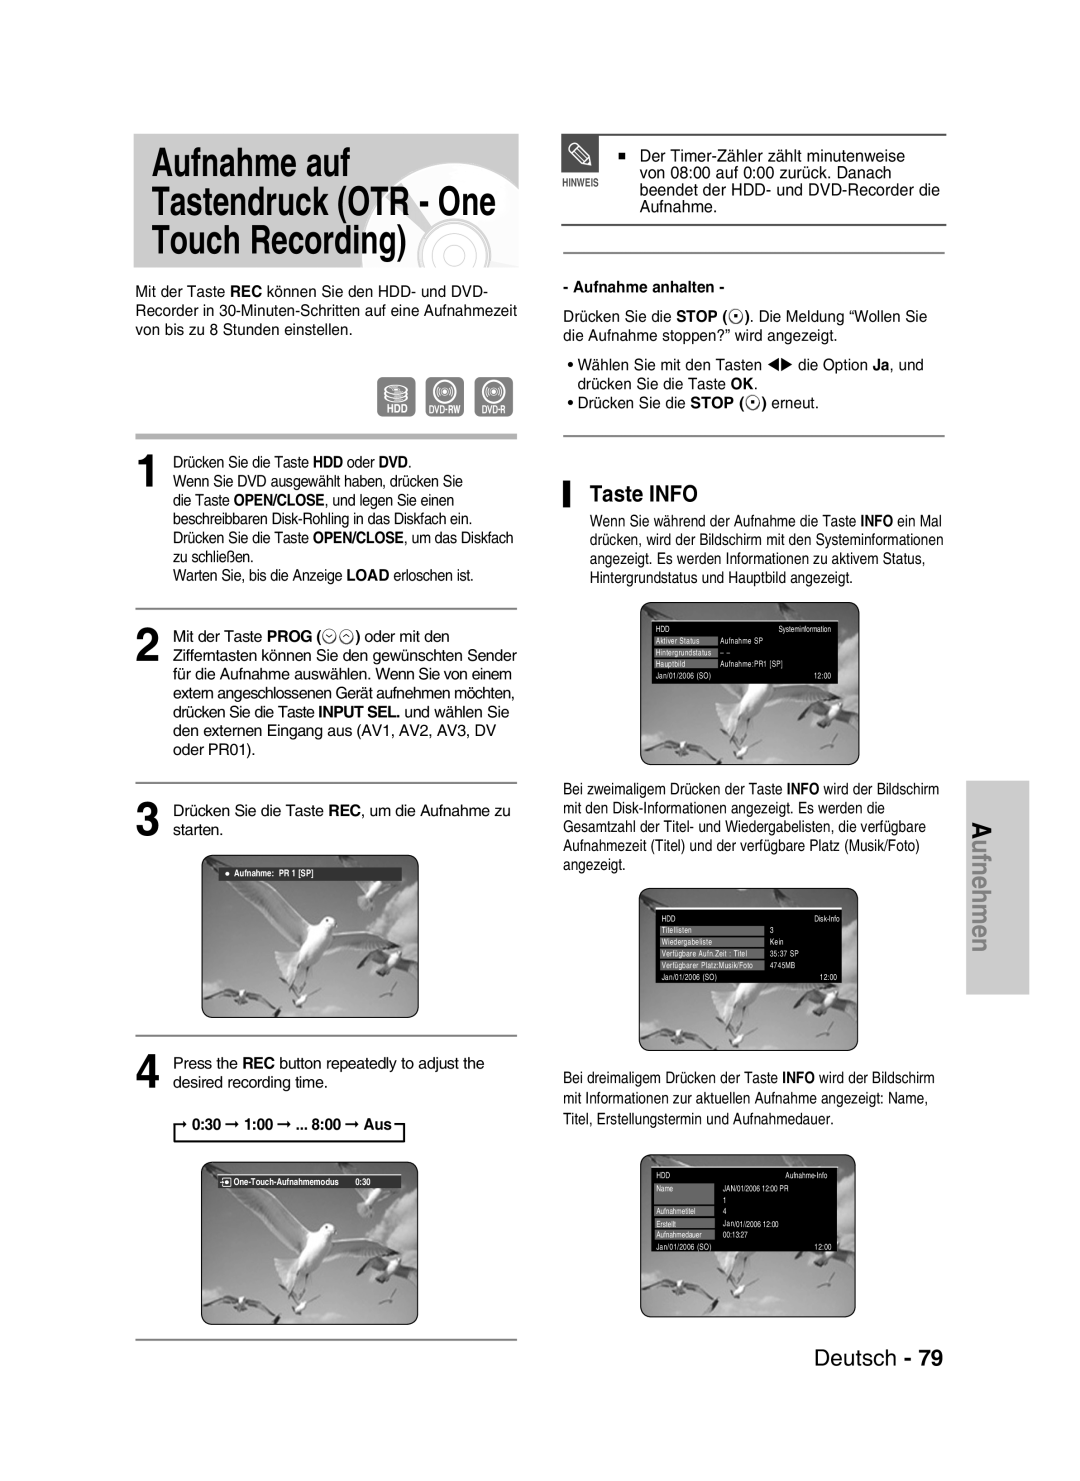 Samsung DVD-HR730/XEG manual Aufnahme auf Tastendruck OTR - One Touch Recording, Taste INFO, Deutsch, 030 100 ... 800 Aus 